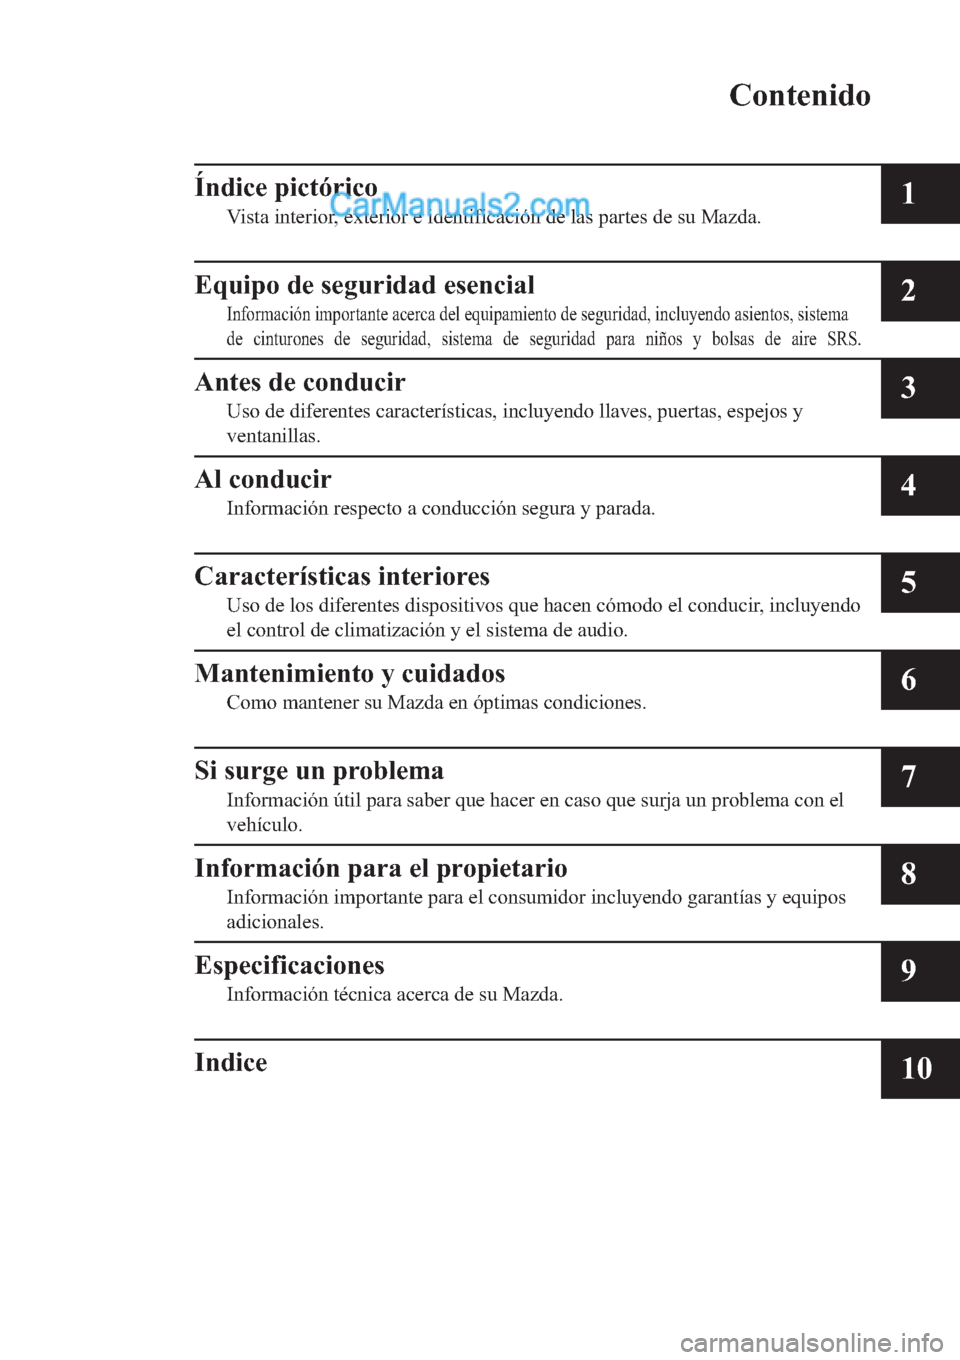 MAZDA MODEL 2 2019  Manual del propietario (in Spanish) �&�R�Q�W�H�Q�L�G�R
�Ë�Q�G�L�F�H��S�L�F�W�y�U�L�F�R
�9�L�V�W�D��L�Q�W�H�U�L�R�U���H�[�W�H�U�L�R�U��H��L�G�H�Q�W�L�I�L�F�D�F�L�y�Q��G�H��O�D�V��S�D�U�W�H�V��G�H��V�X��0�D�]�G�D��
�(�T�X�L